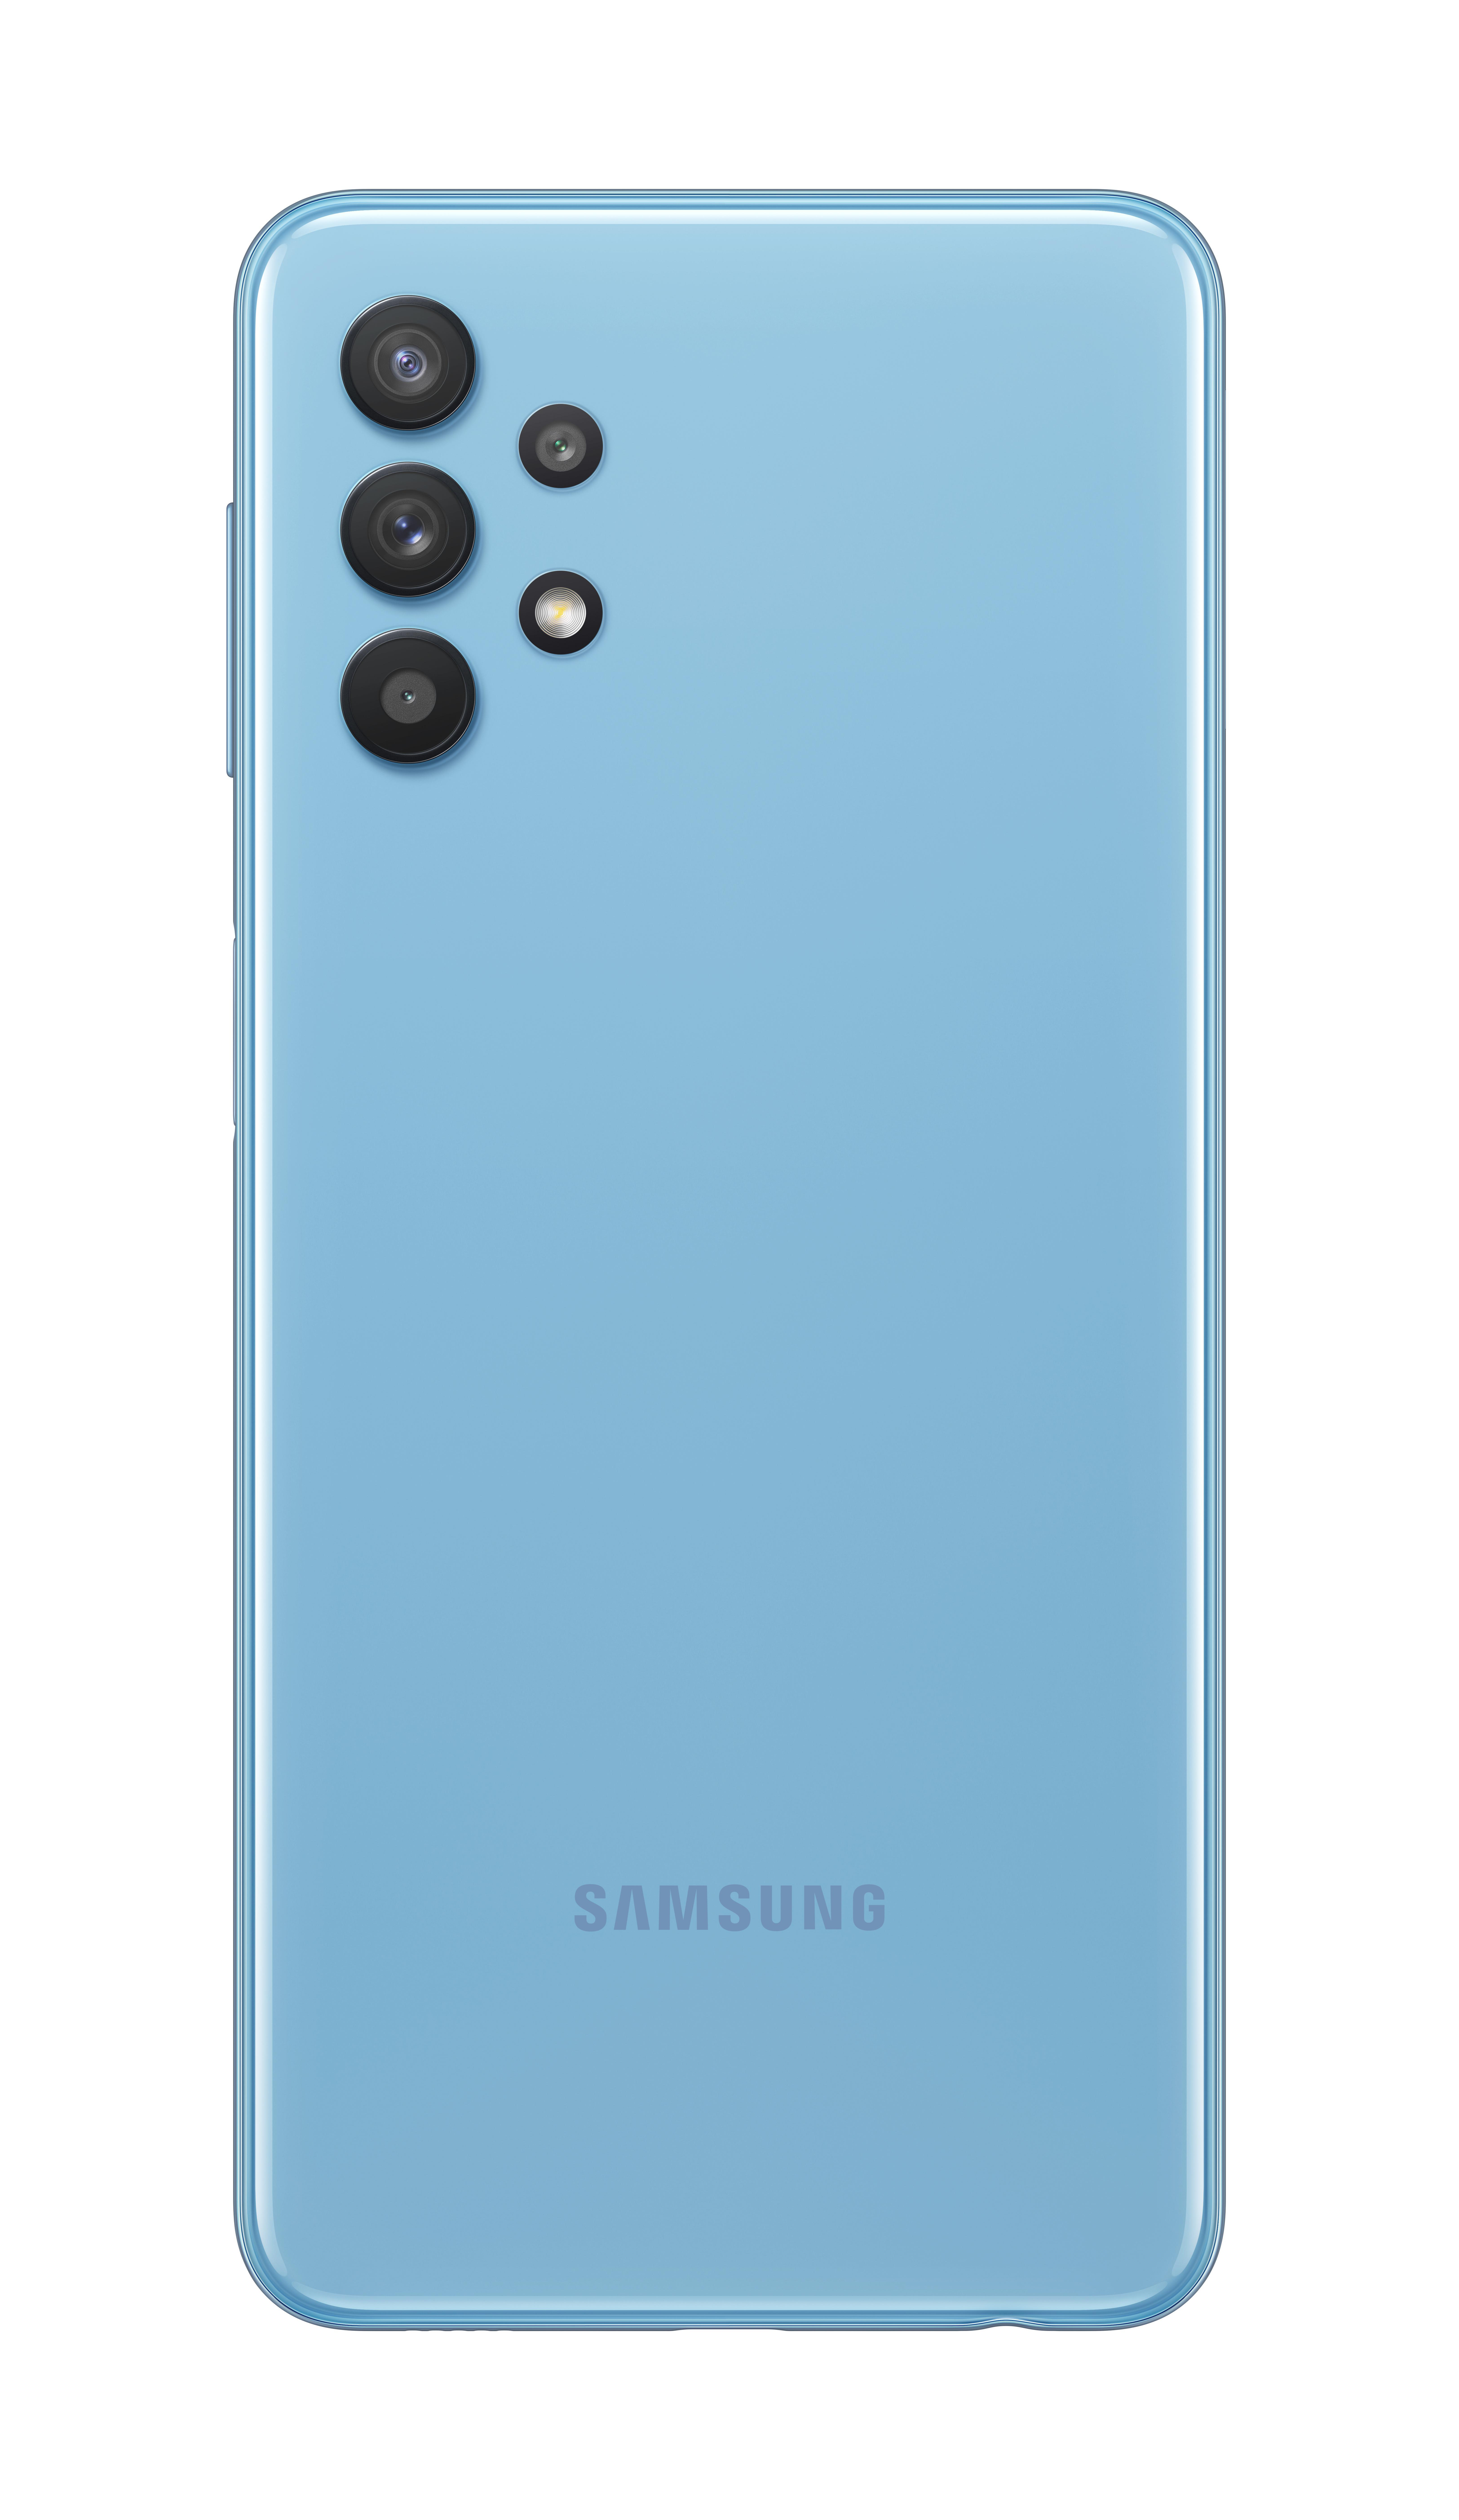 SAMSUNG GALAXY A32 5G 64 GB Dual SIM Blau